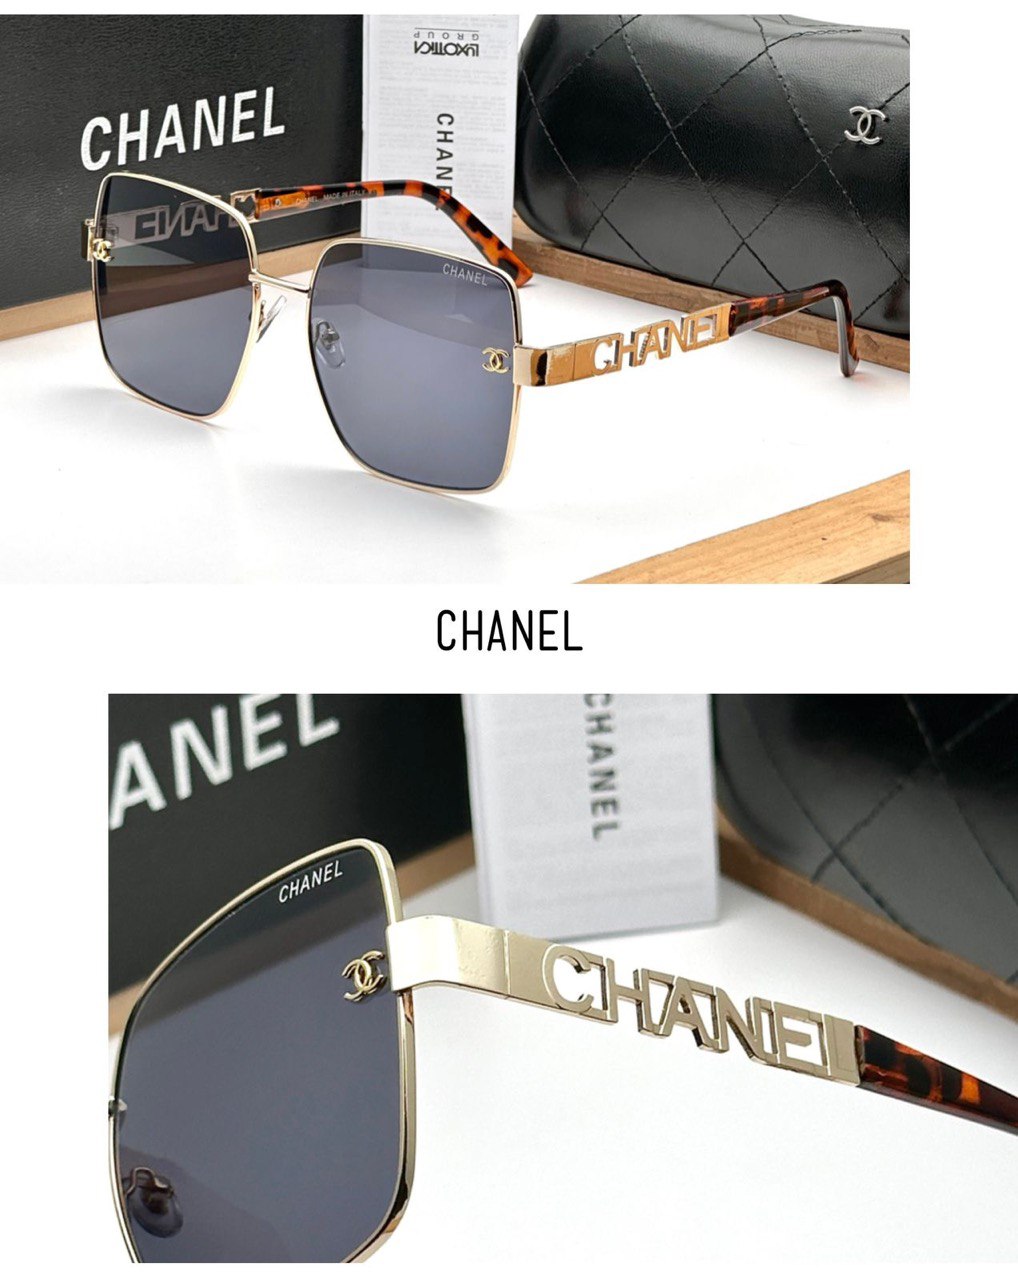 CHANEL SUNGLASSES - Sunglasses Villa